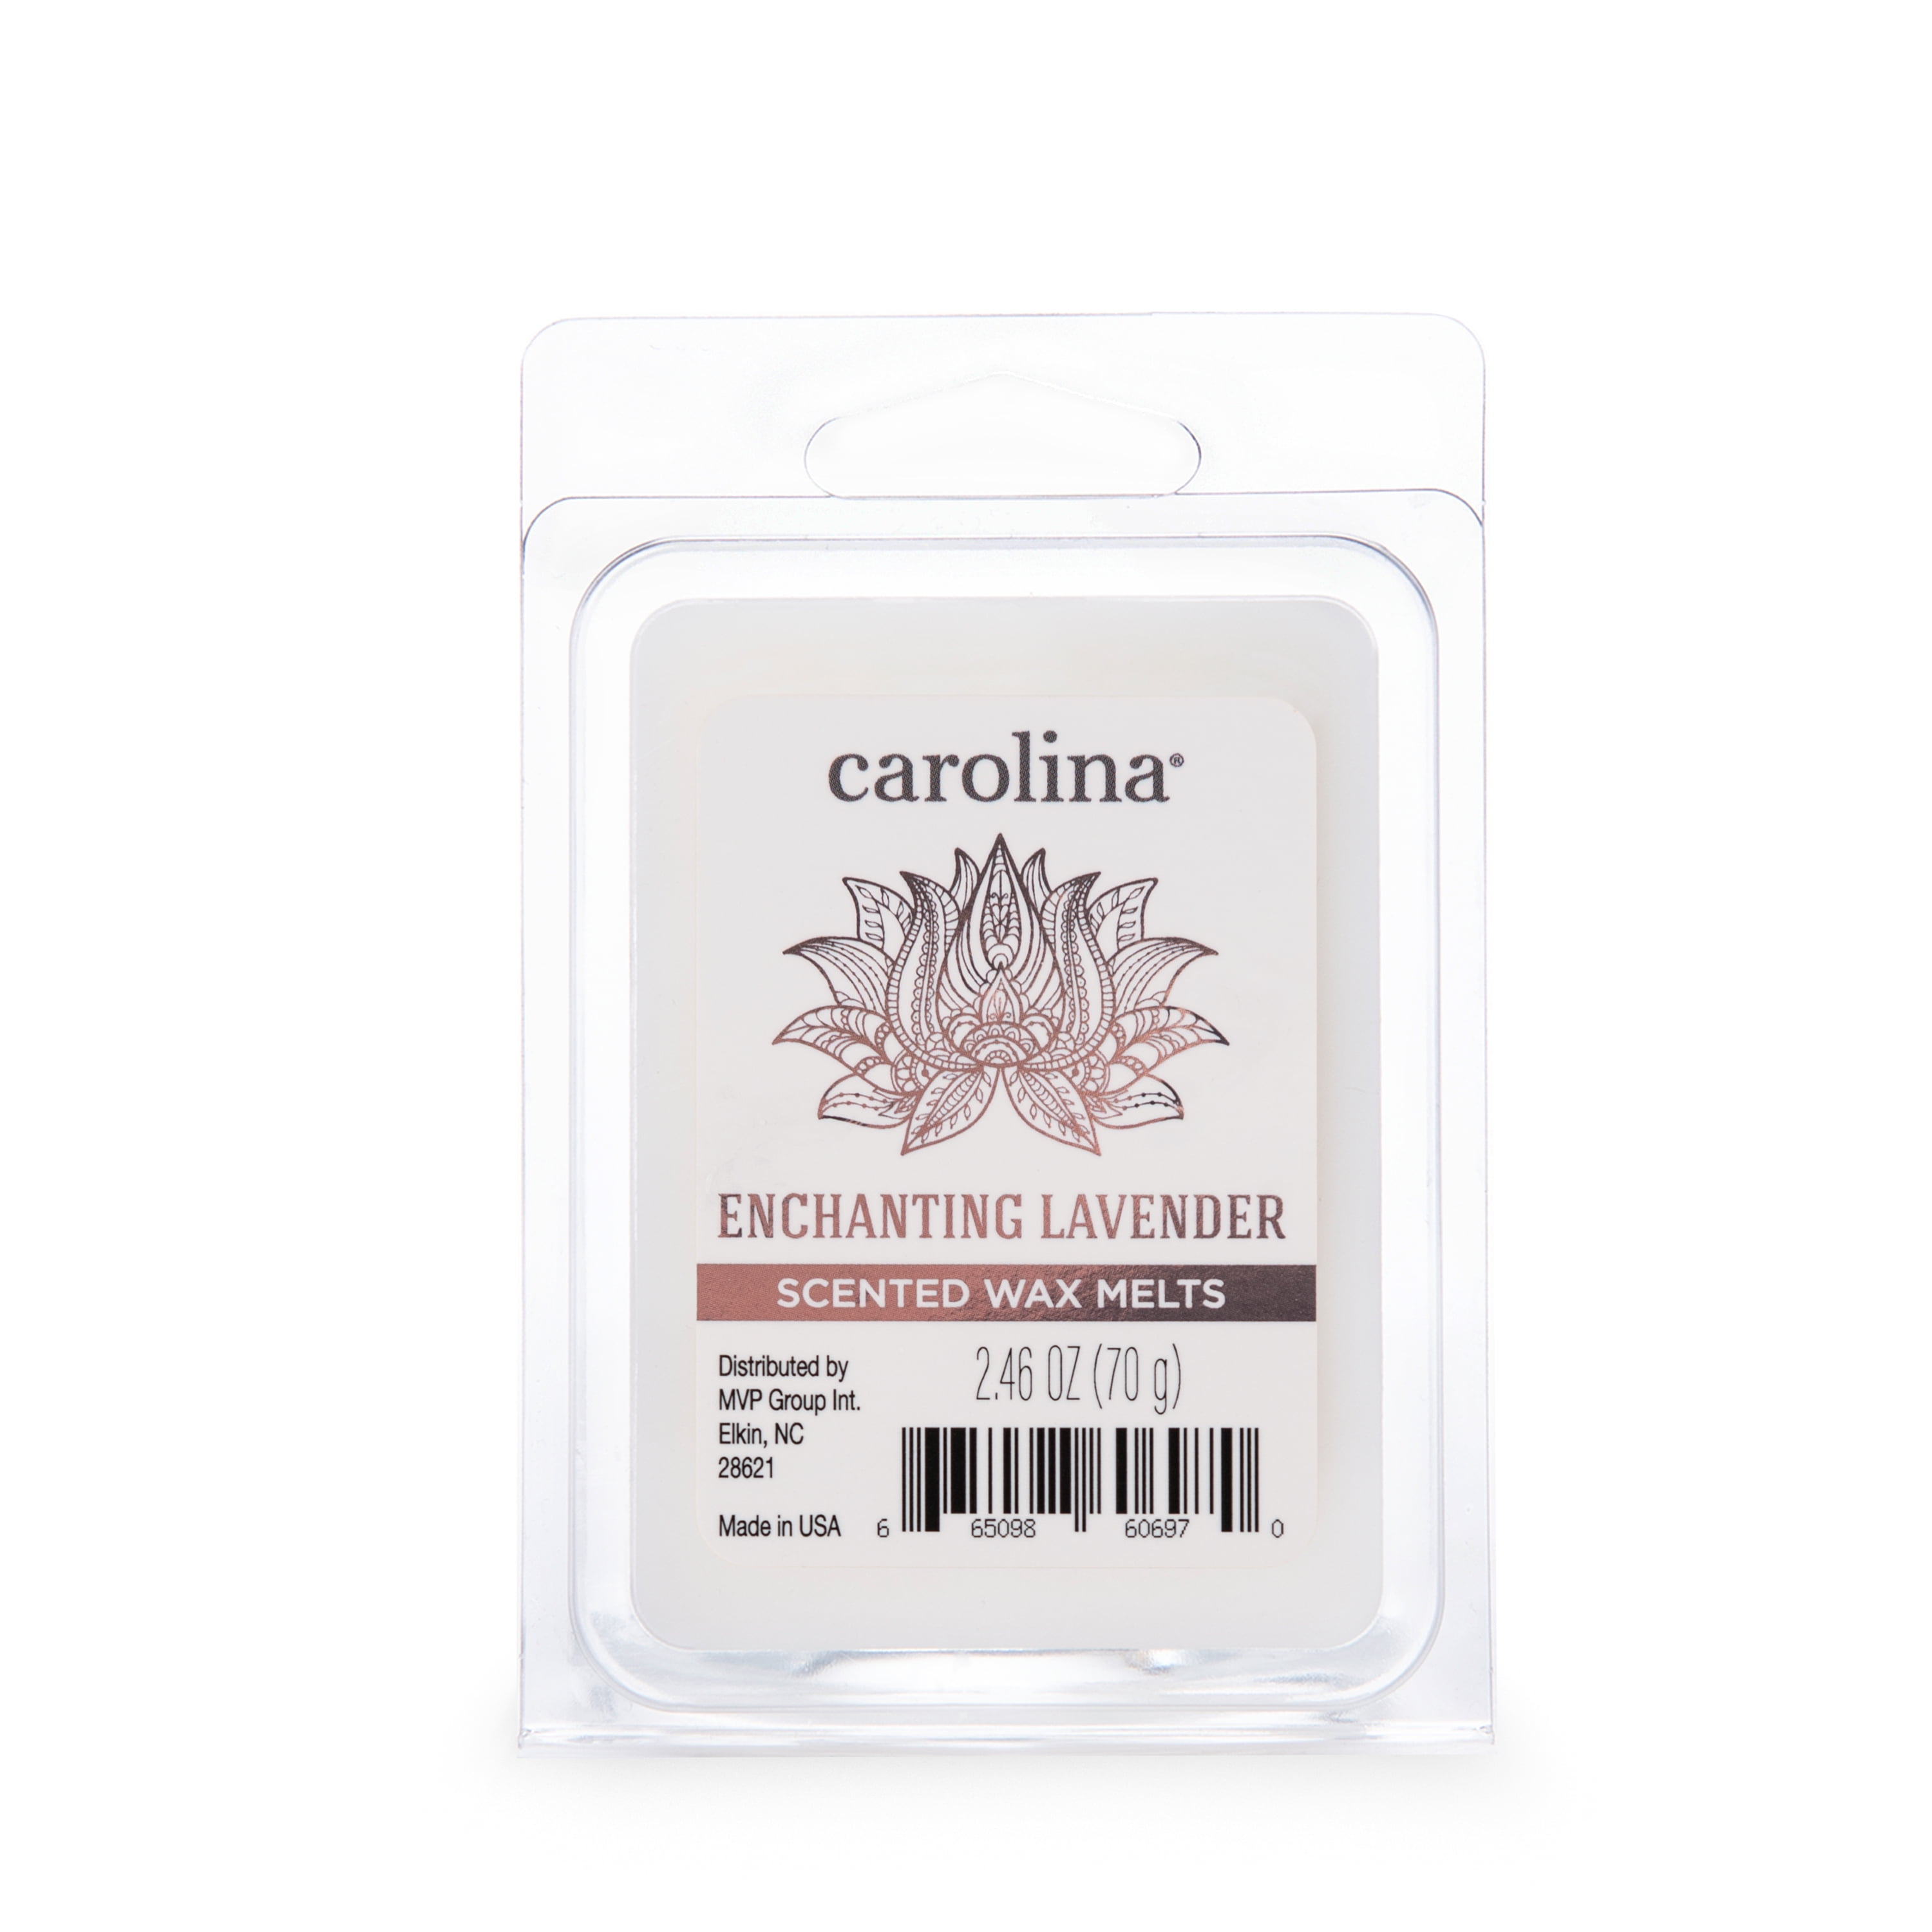 Carolina Candle Enchanting Lavender 2.46 oz Wax Melt, Aromatherapy, 6 Cube, White